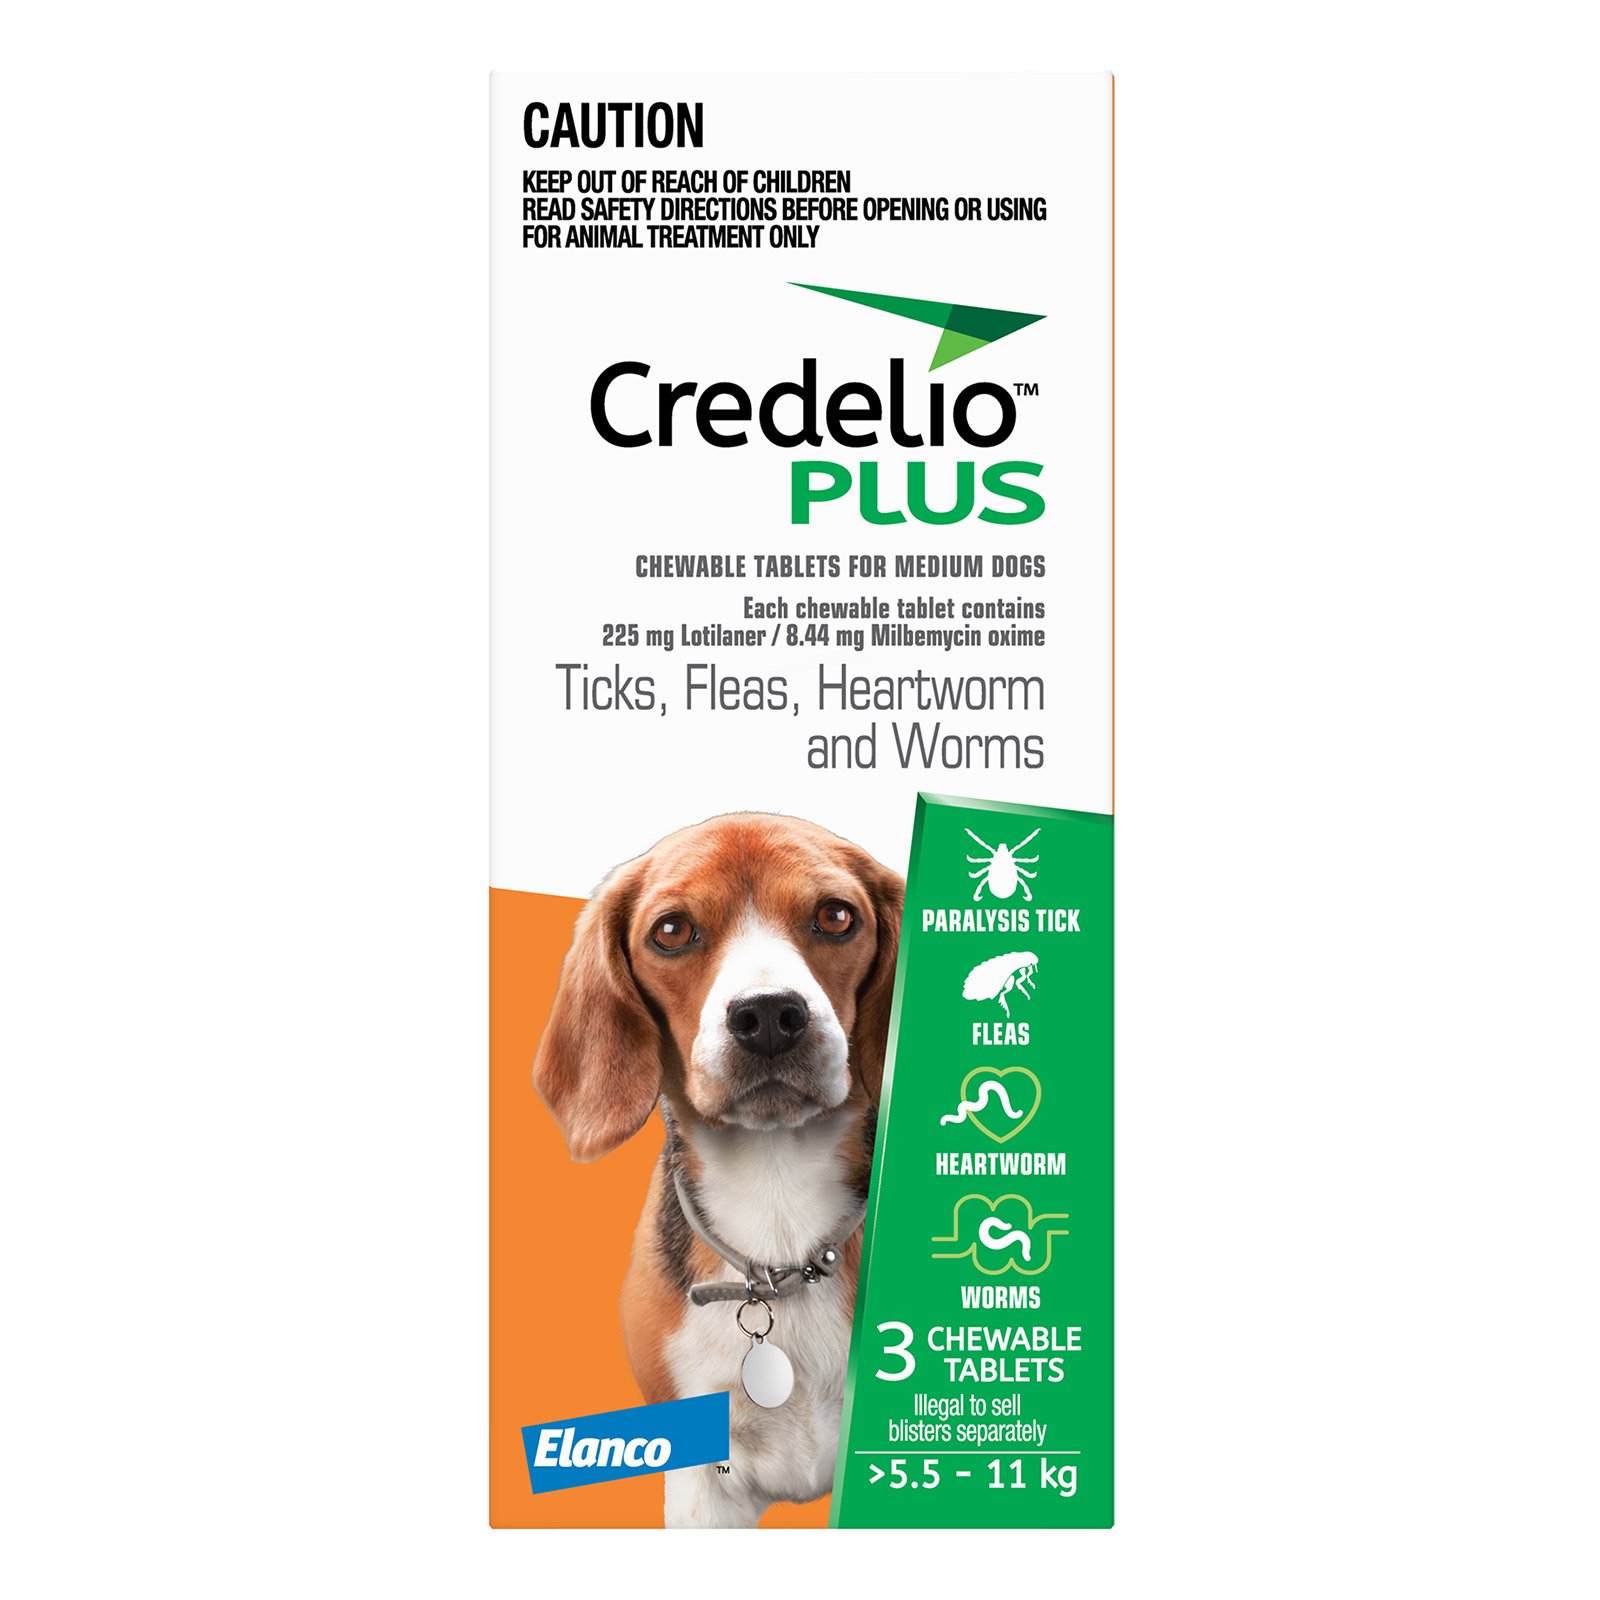 credelio-plus-5.5-11kg-for-medium-dogs-orange.jpg